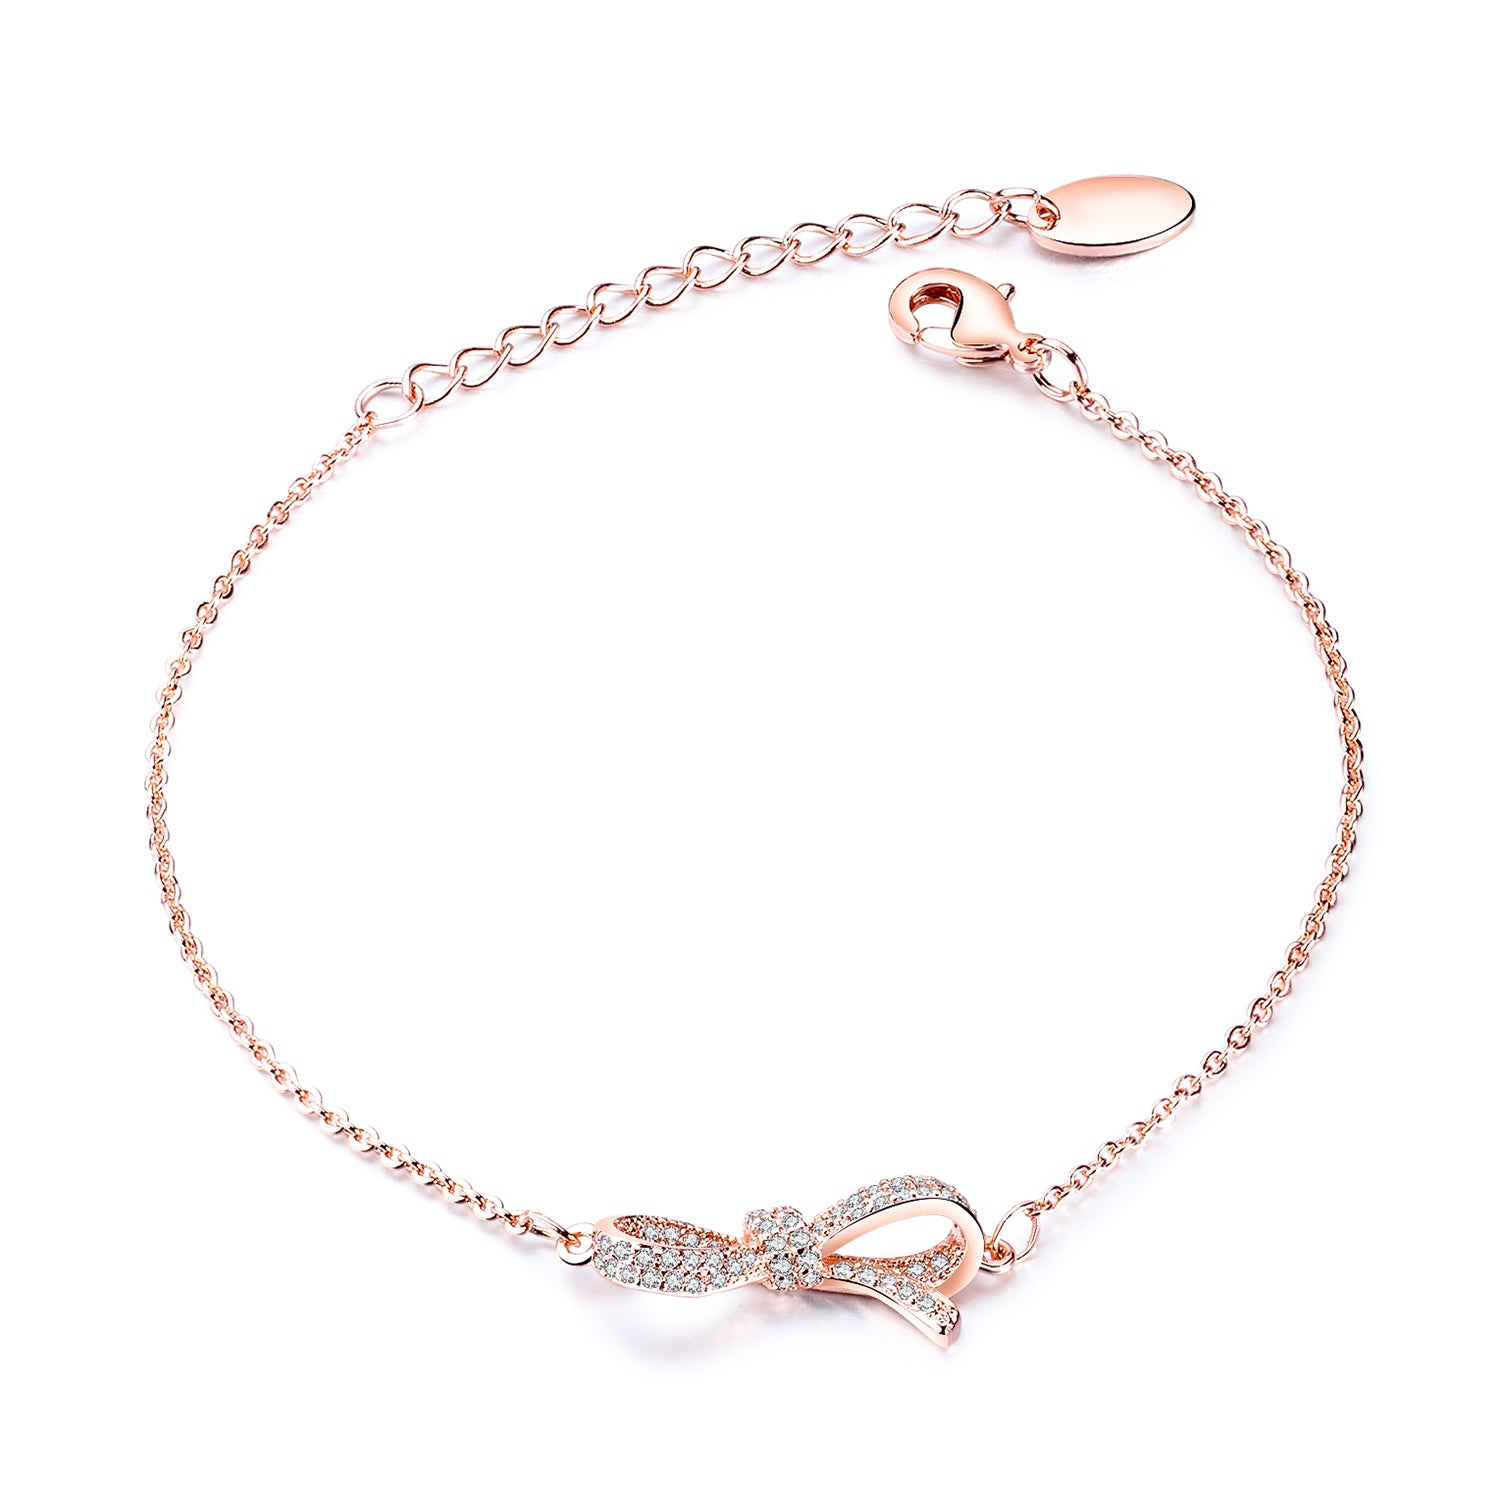 Personalized Adjustable Cuff Bracelet Engraved  Custom Copper Women Jewelry Bracelets - MackTechBiz